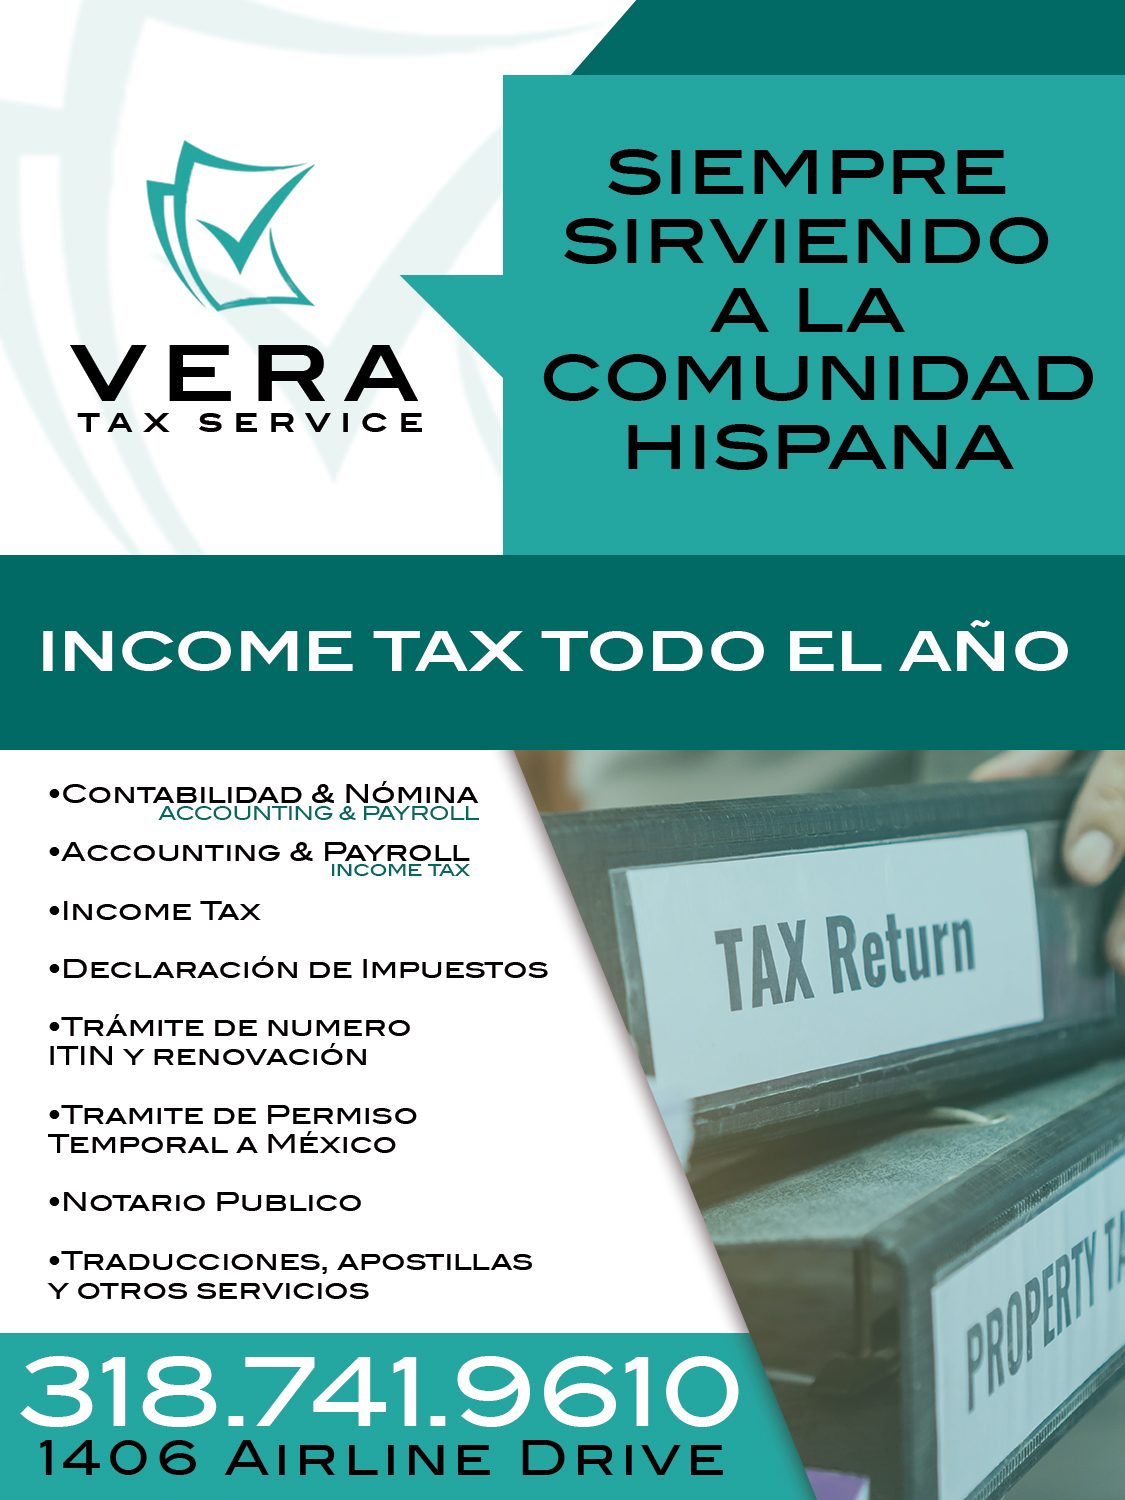 Vera Tax Service